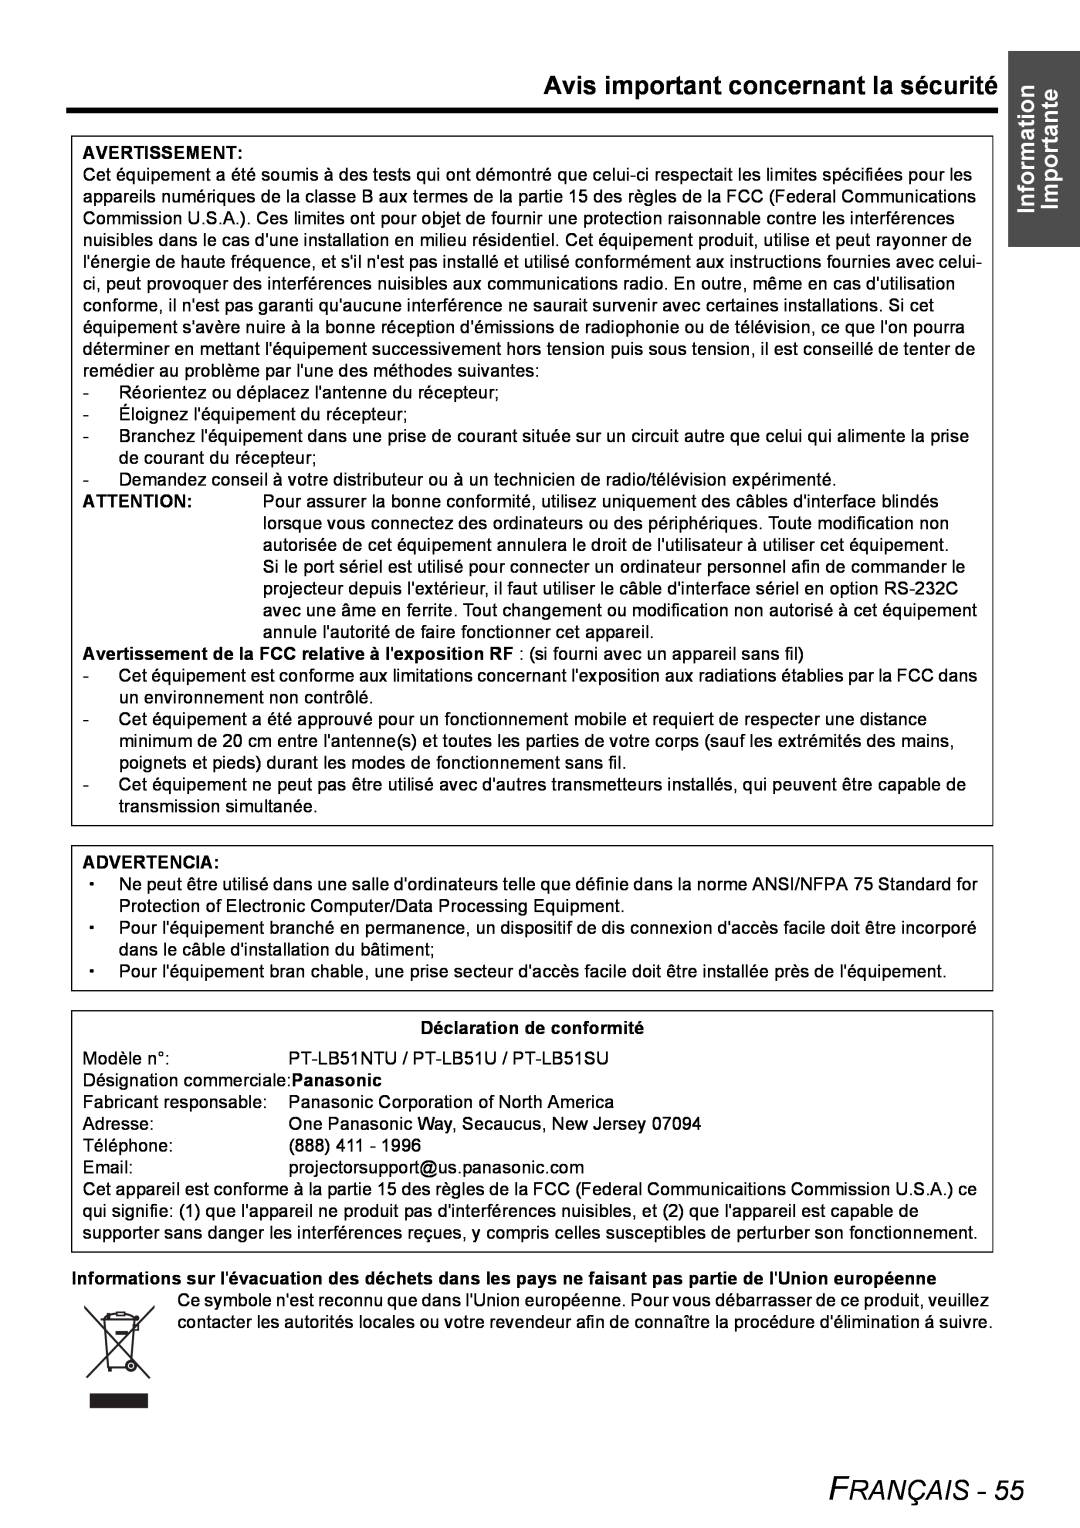 Panasonic PT-LB51NTU operating instructions Avis important concernant la sécurité, Information Importante, Français 